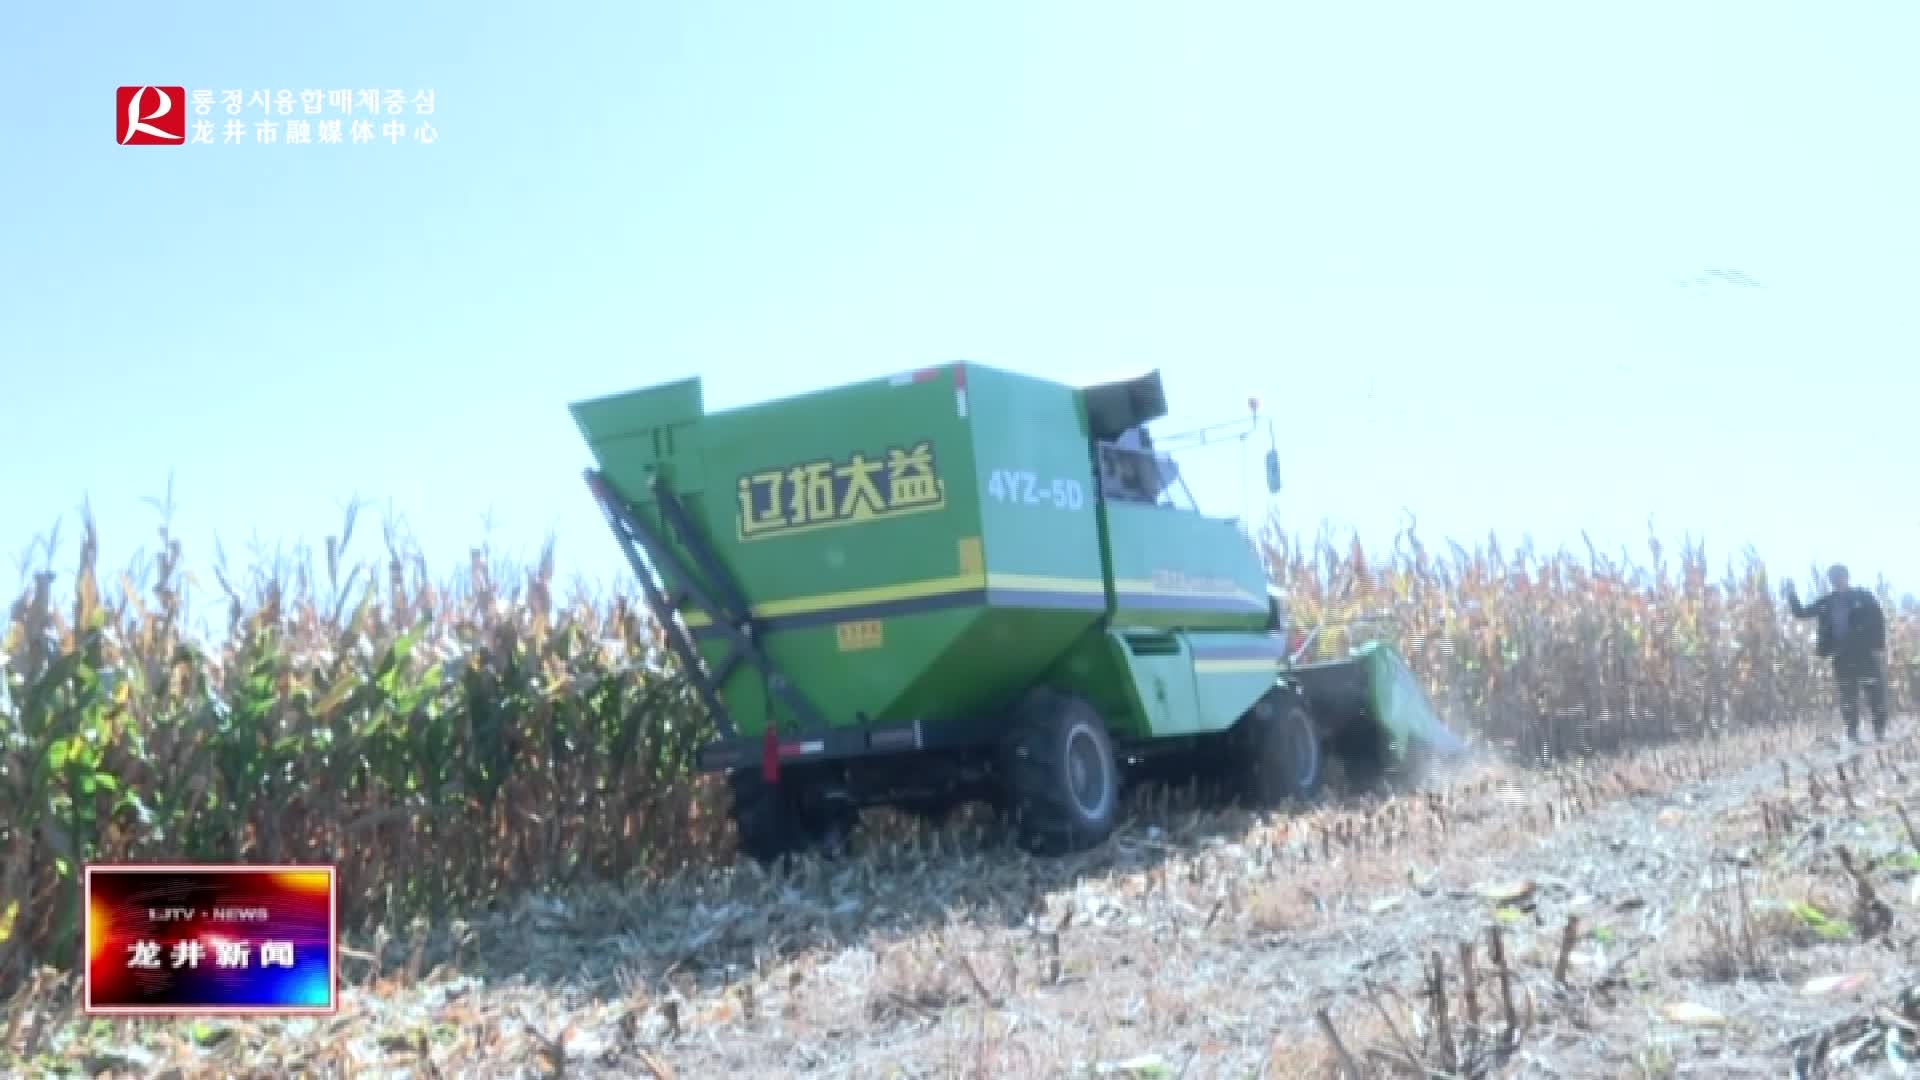 【龙井新闻】市农业农村局农机总站举办秋季玉米机械化作业现场会